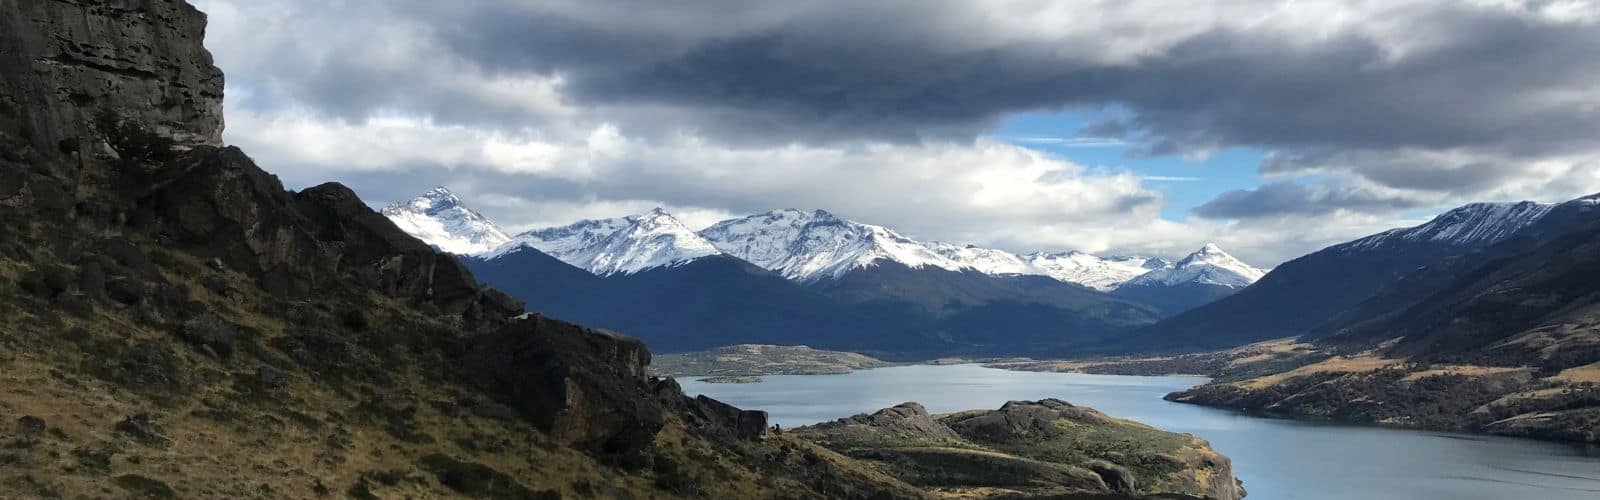 Arte rupestre escalada y senderismo en la Patagonia destacada